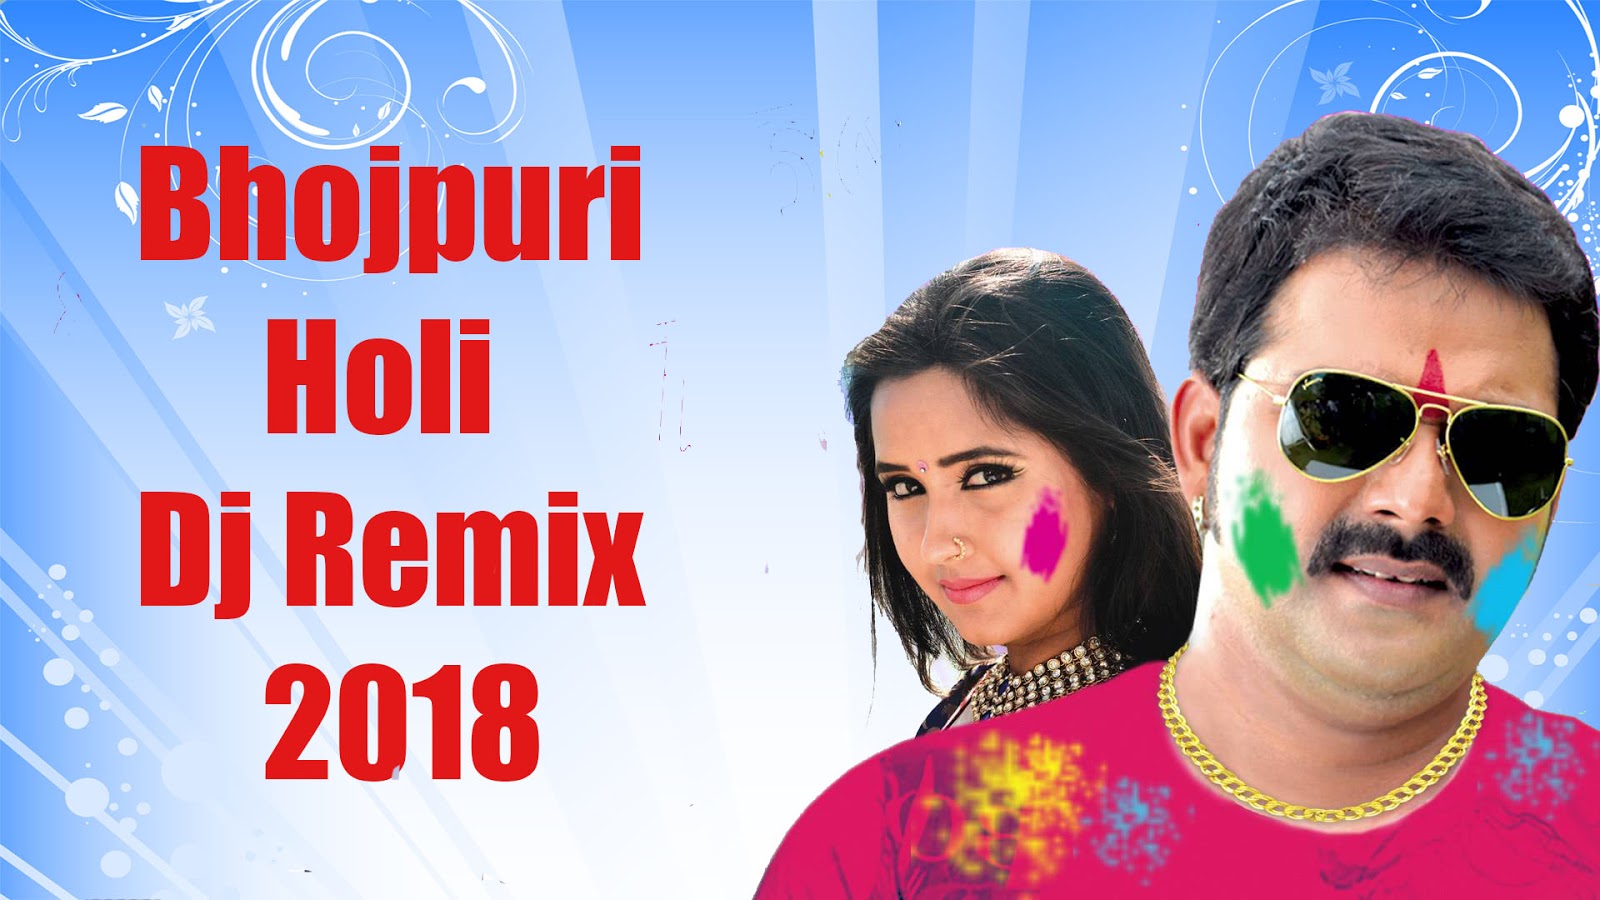 Bhojpuri Movie New 2020 Hd - 1600x900 Wallpaper 